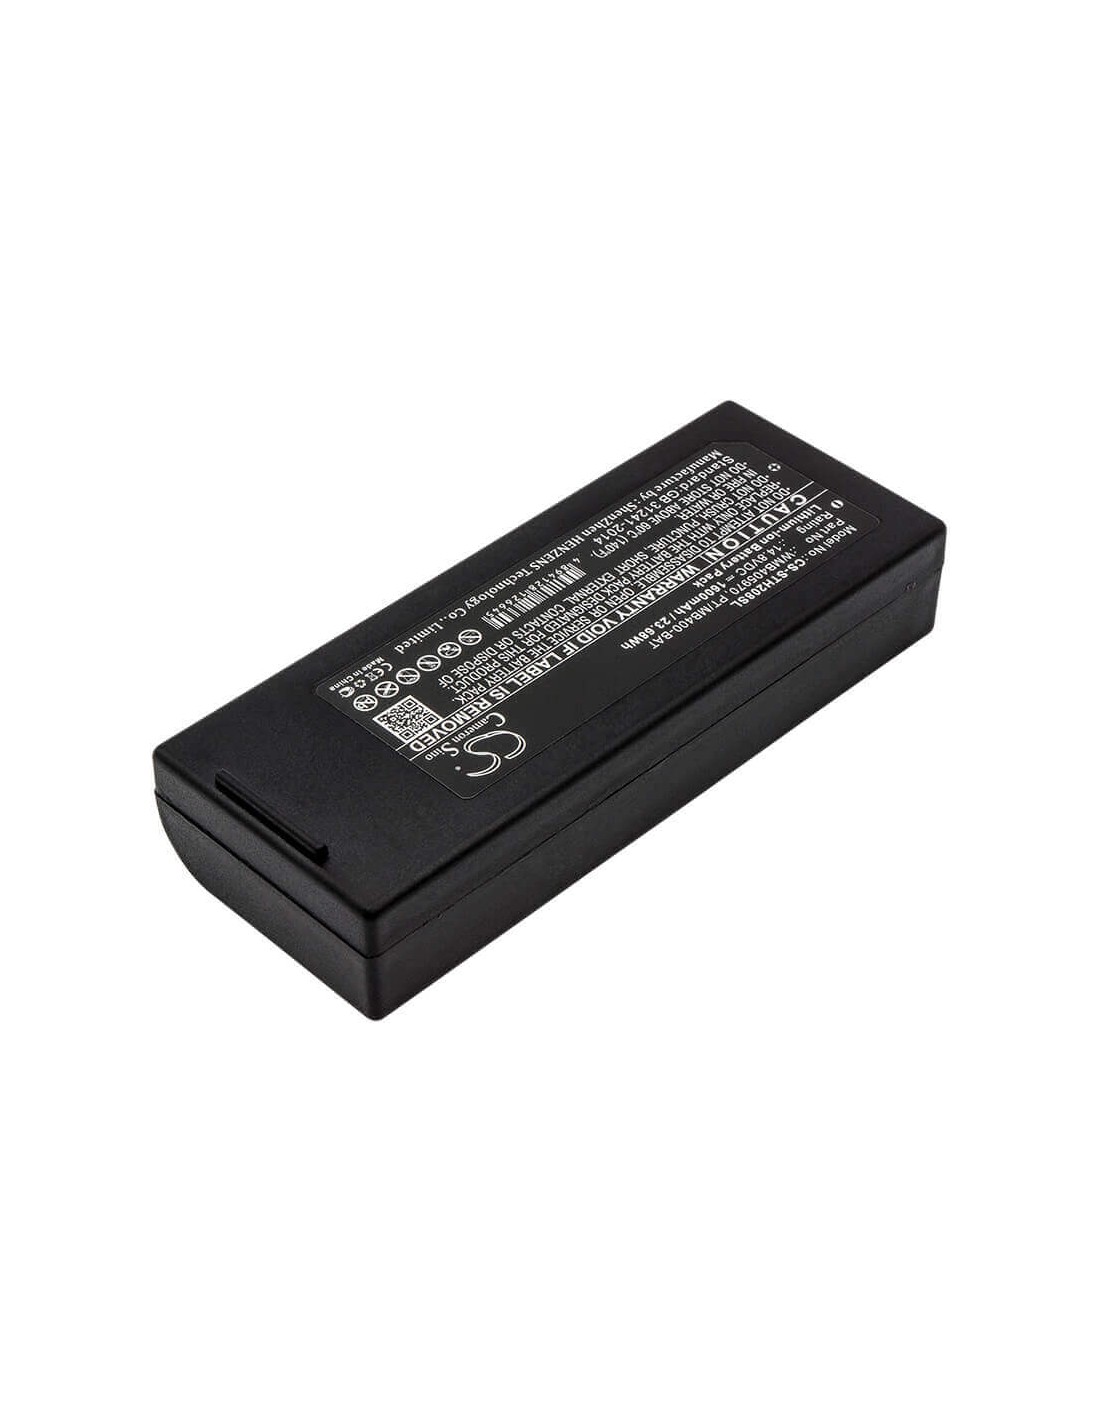 Battery for Lapin, Pt408e, Pt412e, Sato 14.8V, 1600mAh - 23.68Wh